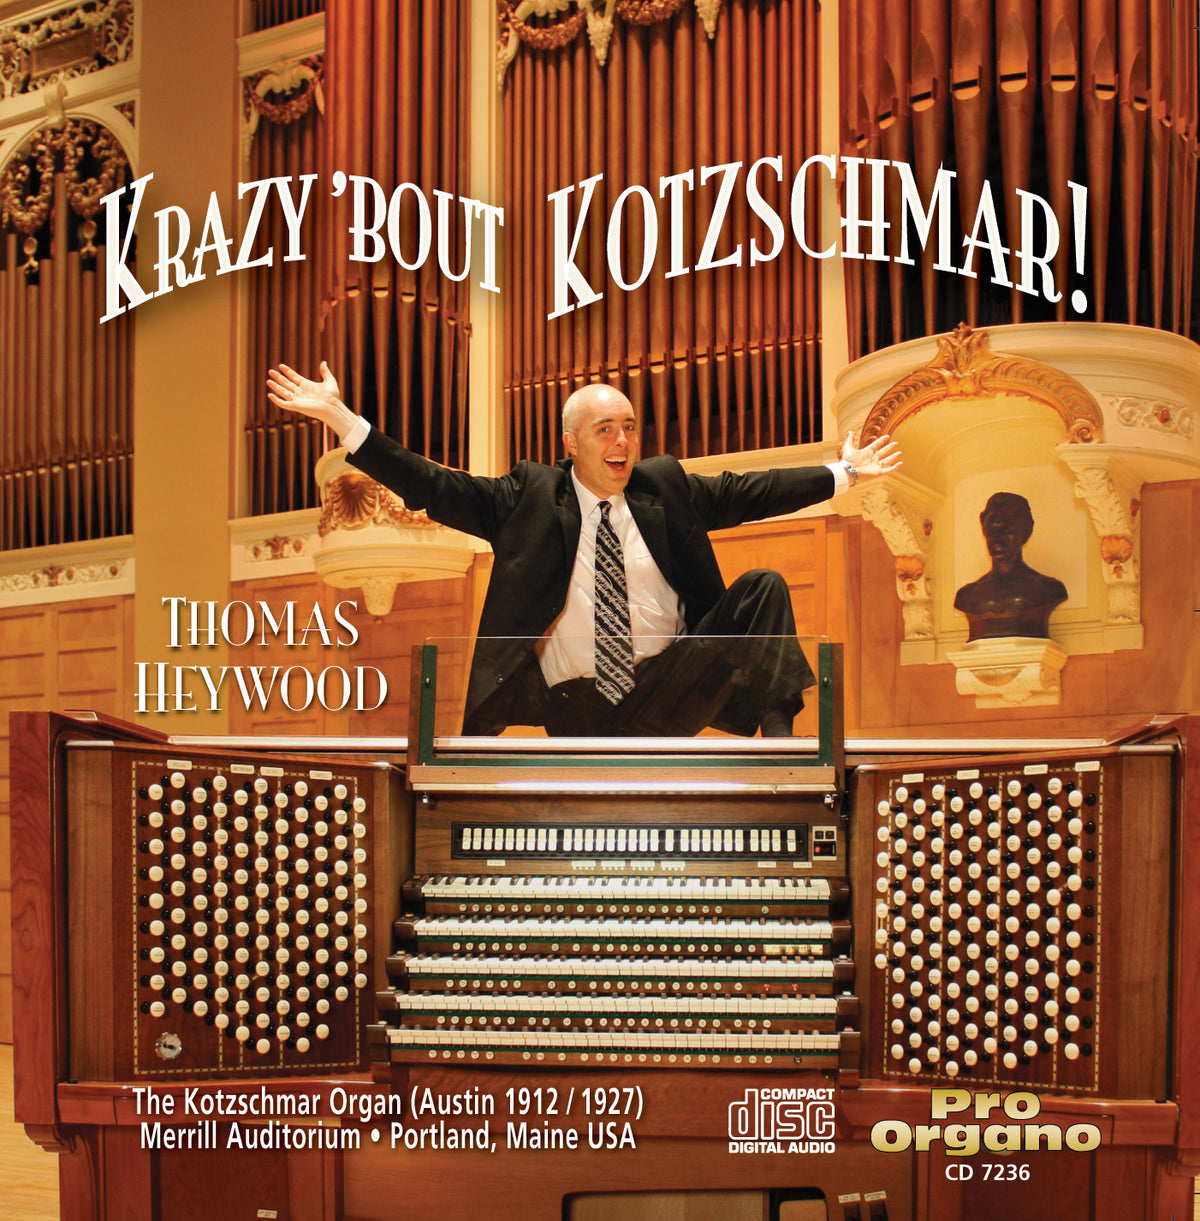 Krazy 'bout Kotzschmar! (CD) - Concert Organ International